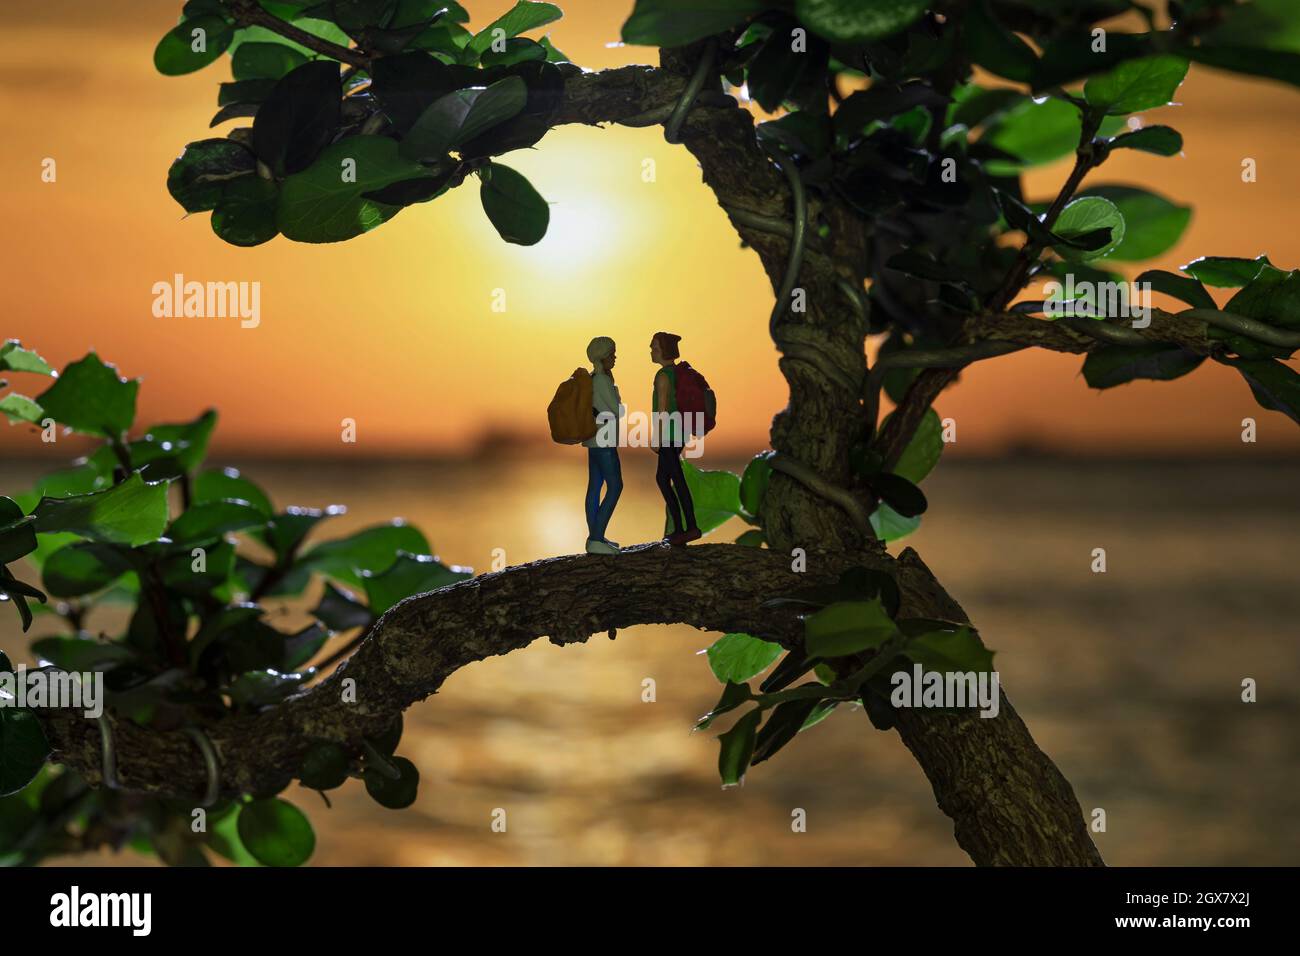 Miniatura mochilero de pie sobre los árboles en una silueta puesta de sol fondo. Foto de stock